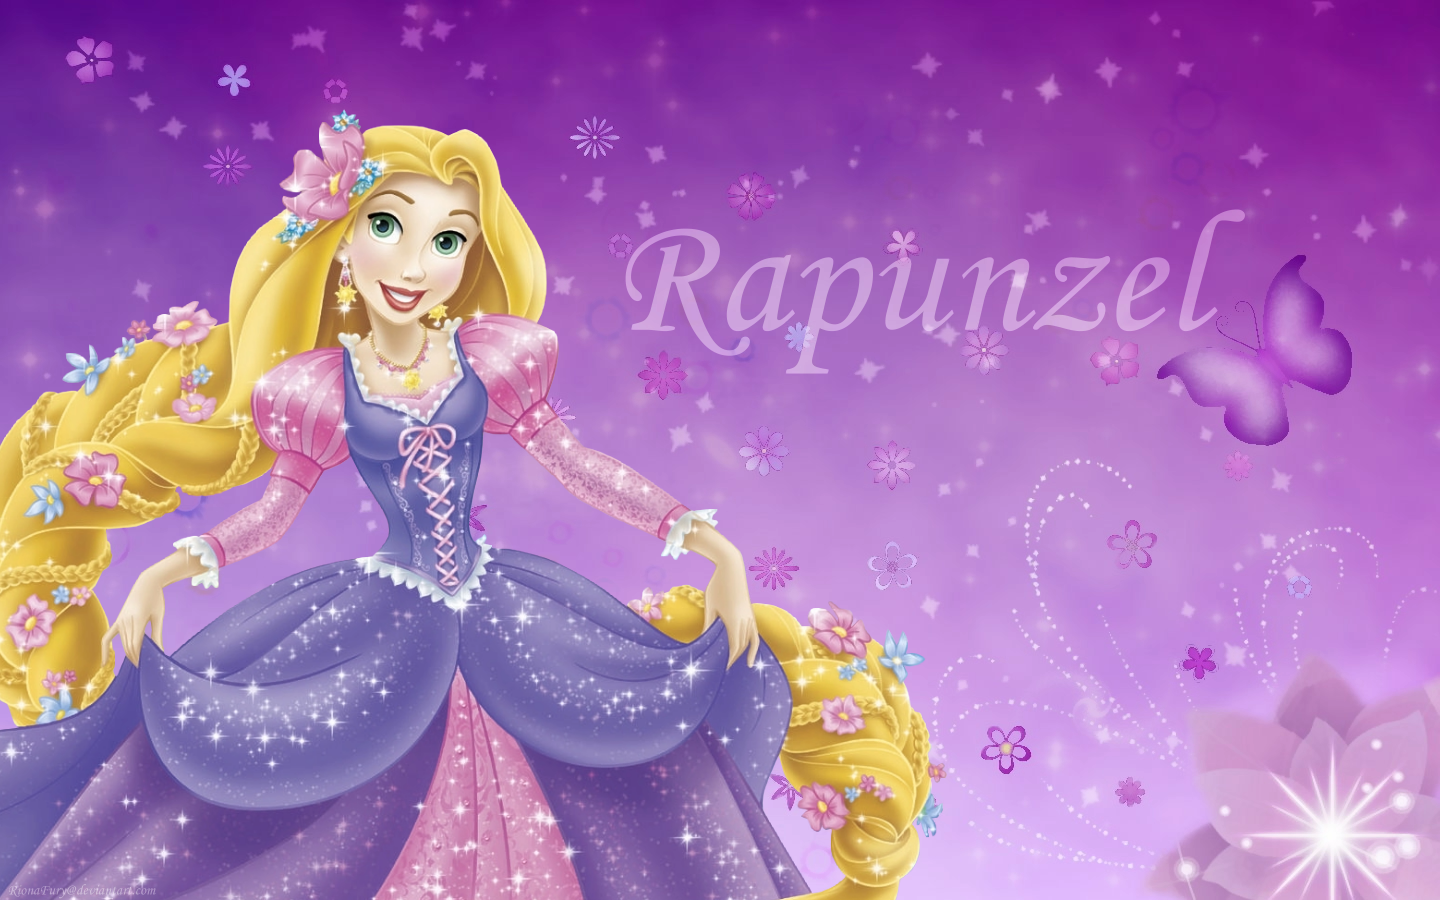 Tangled images Disney Princess Rapunzel wallpaper photos 23744594 1440x900